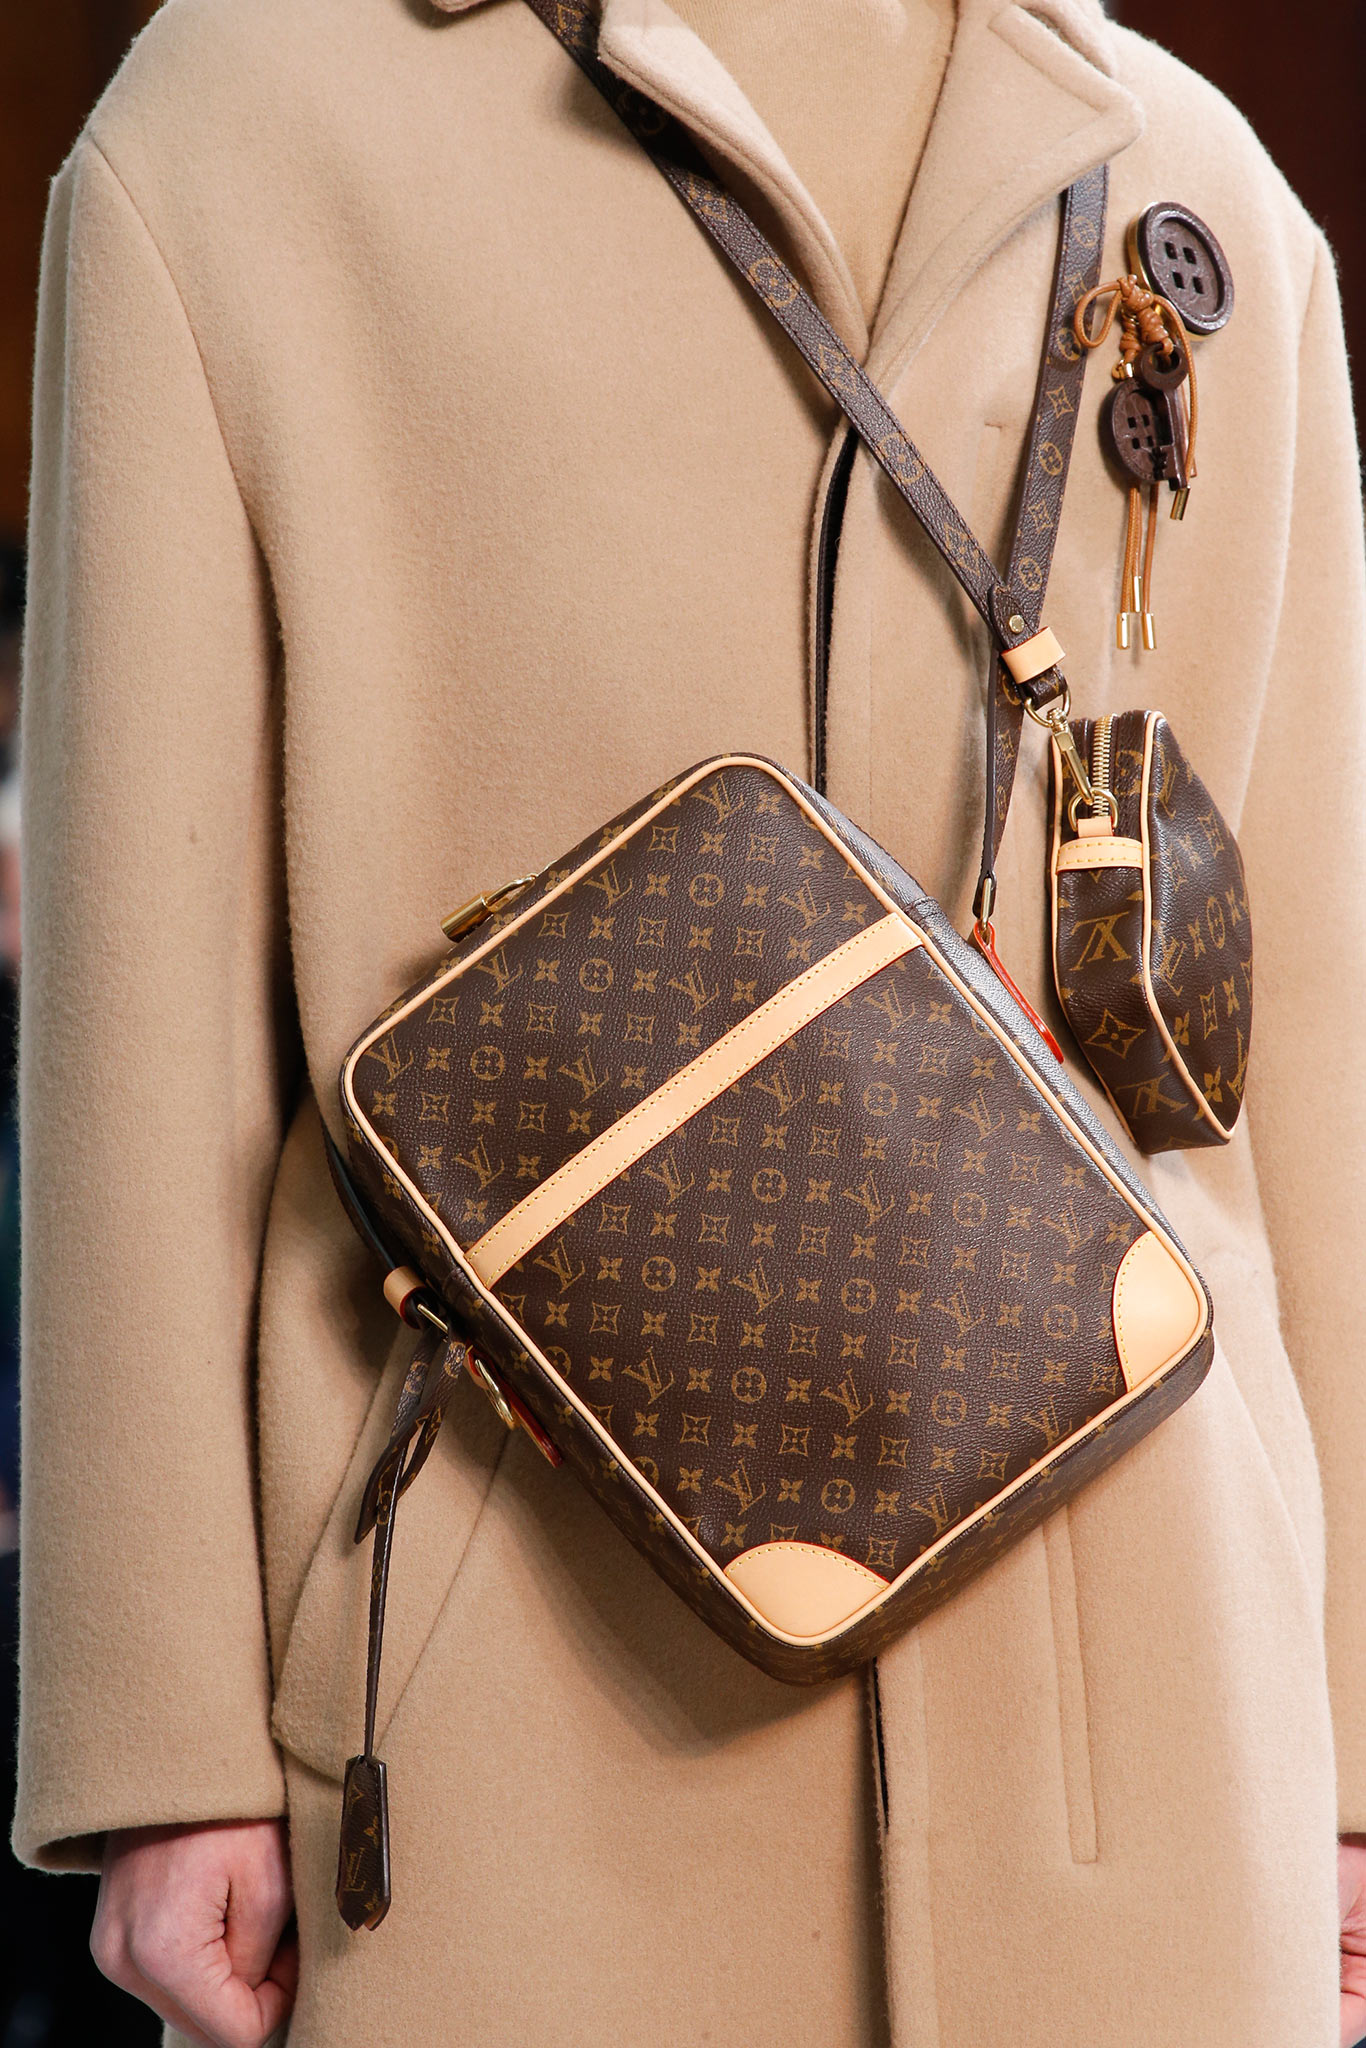 Louis Vuitton, Bags, Authentic Louis Vuitton Kangaroo Soana Runaway Bag